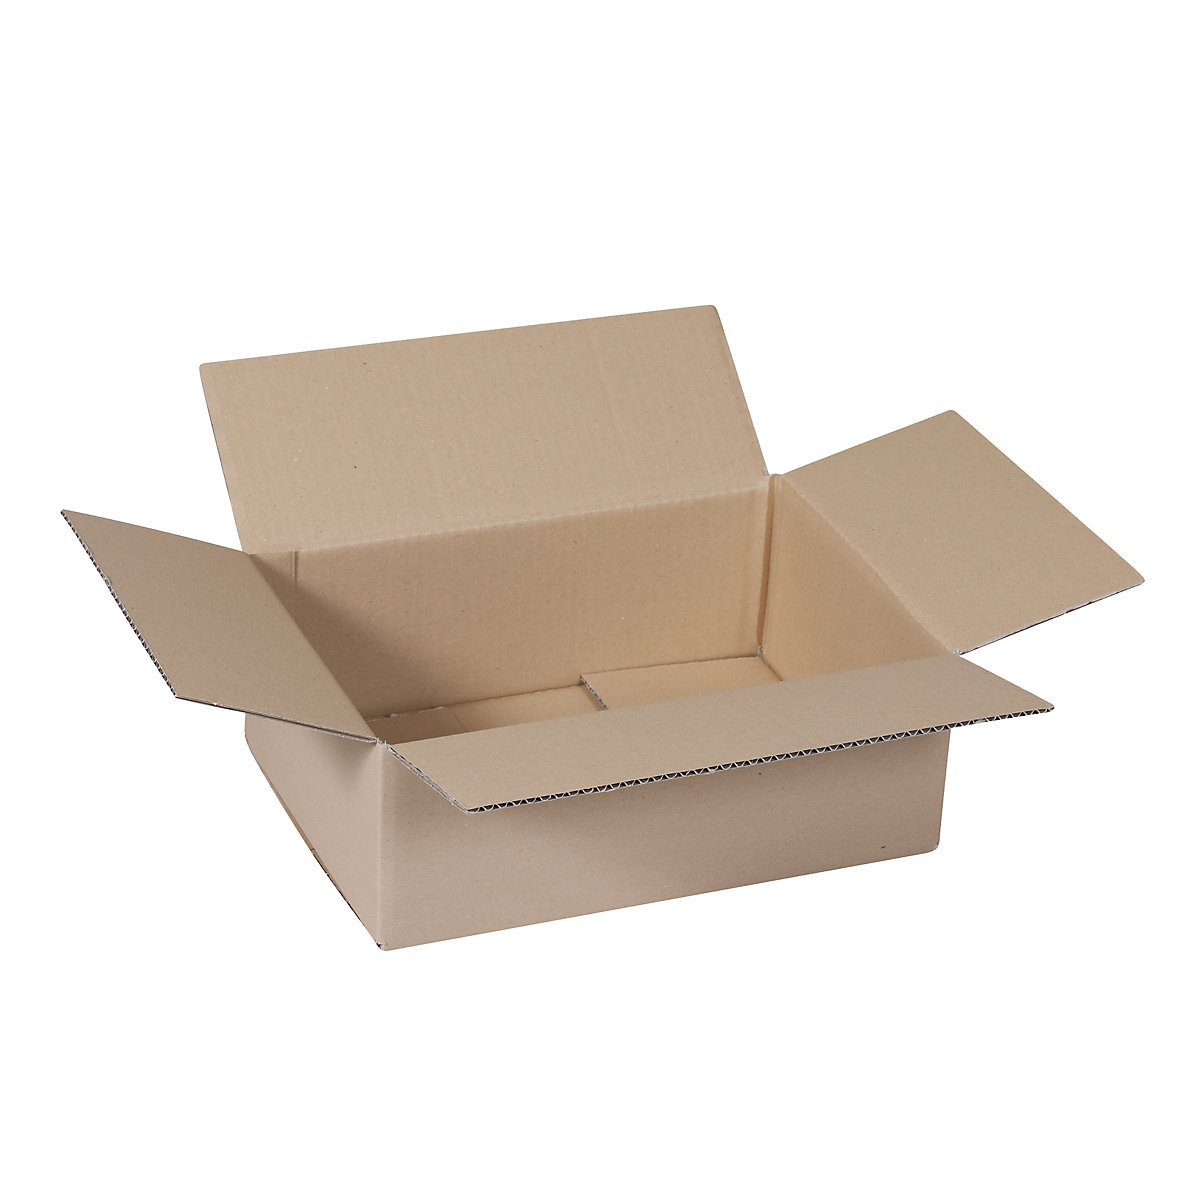 Sklopiva kartonska kutija, FEFCO 0201, od 1-valnog kartona, unutarnje dimenzije 350 x 250 x 120 mm, pak. 50 kom.-10